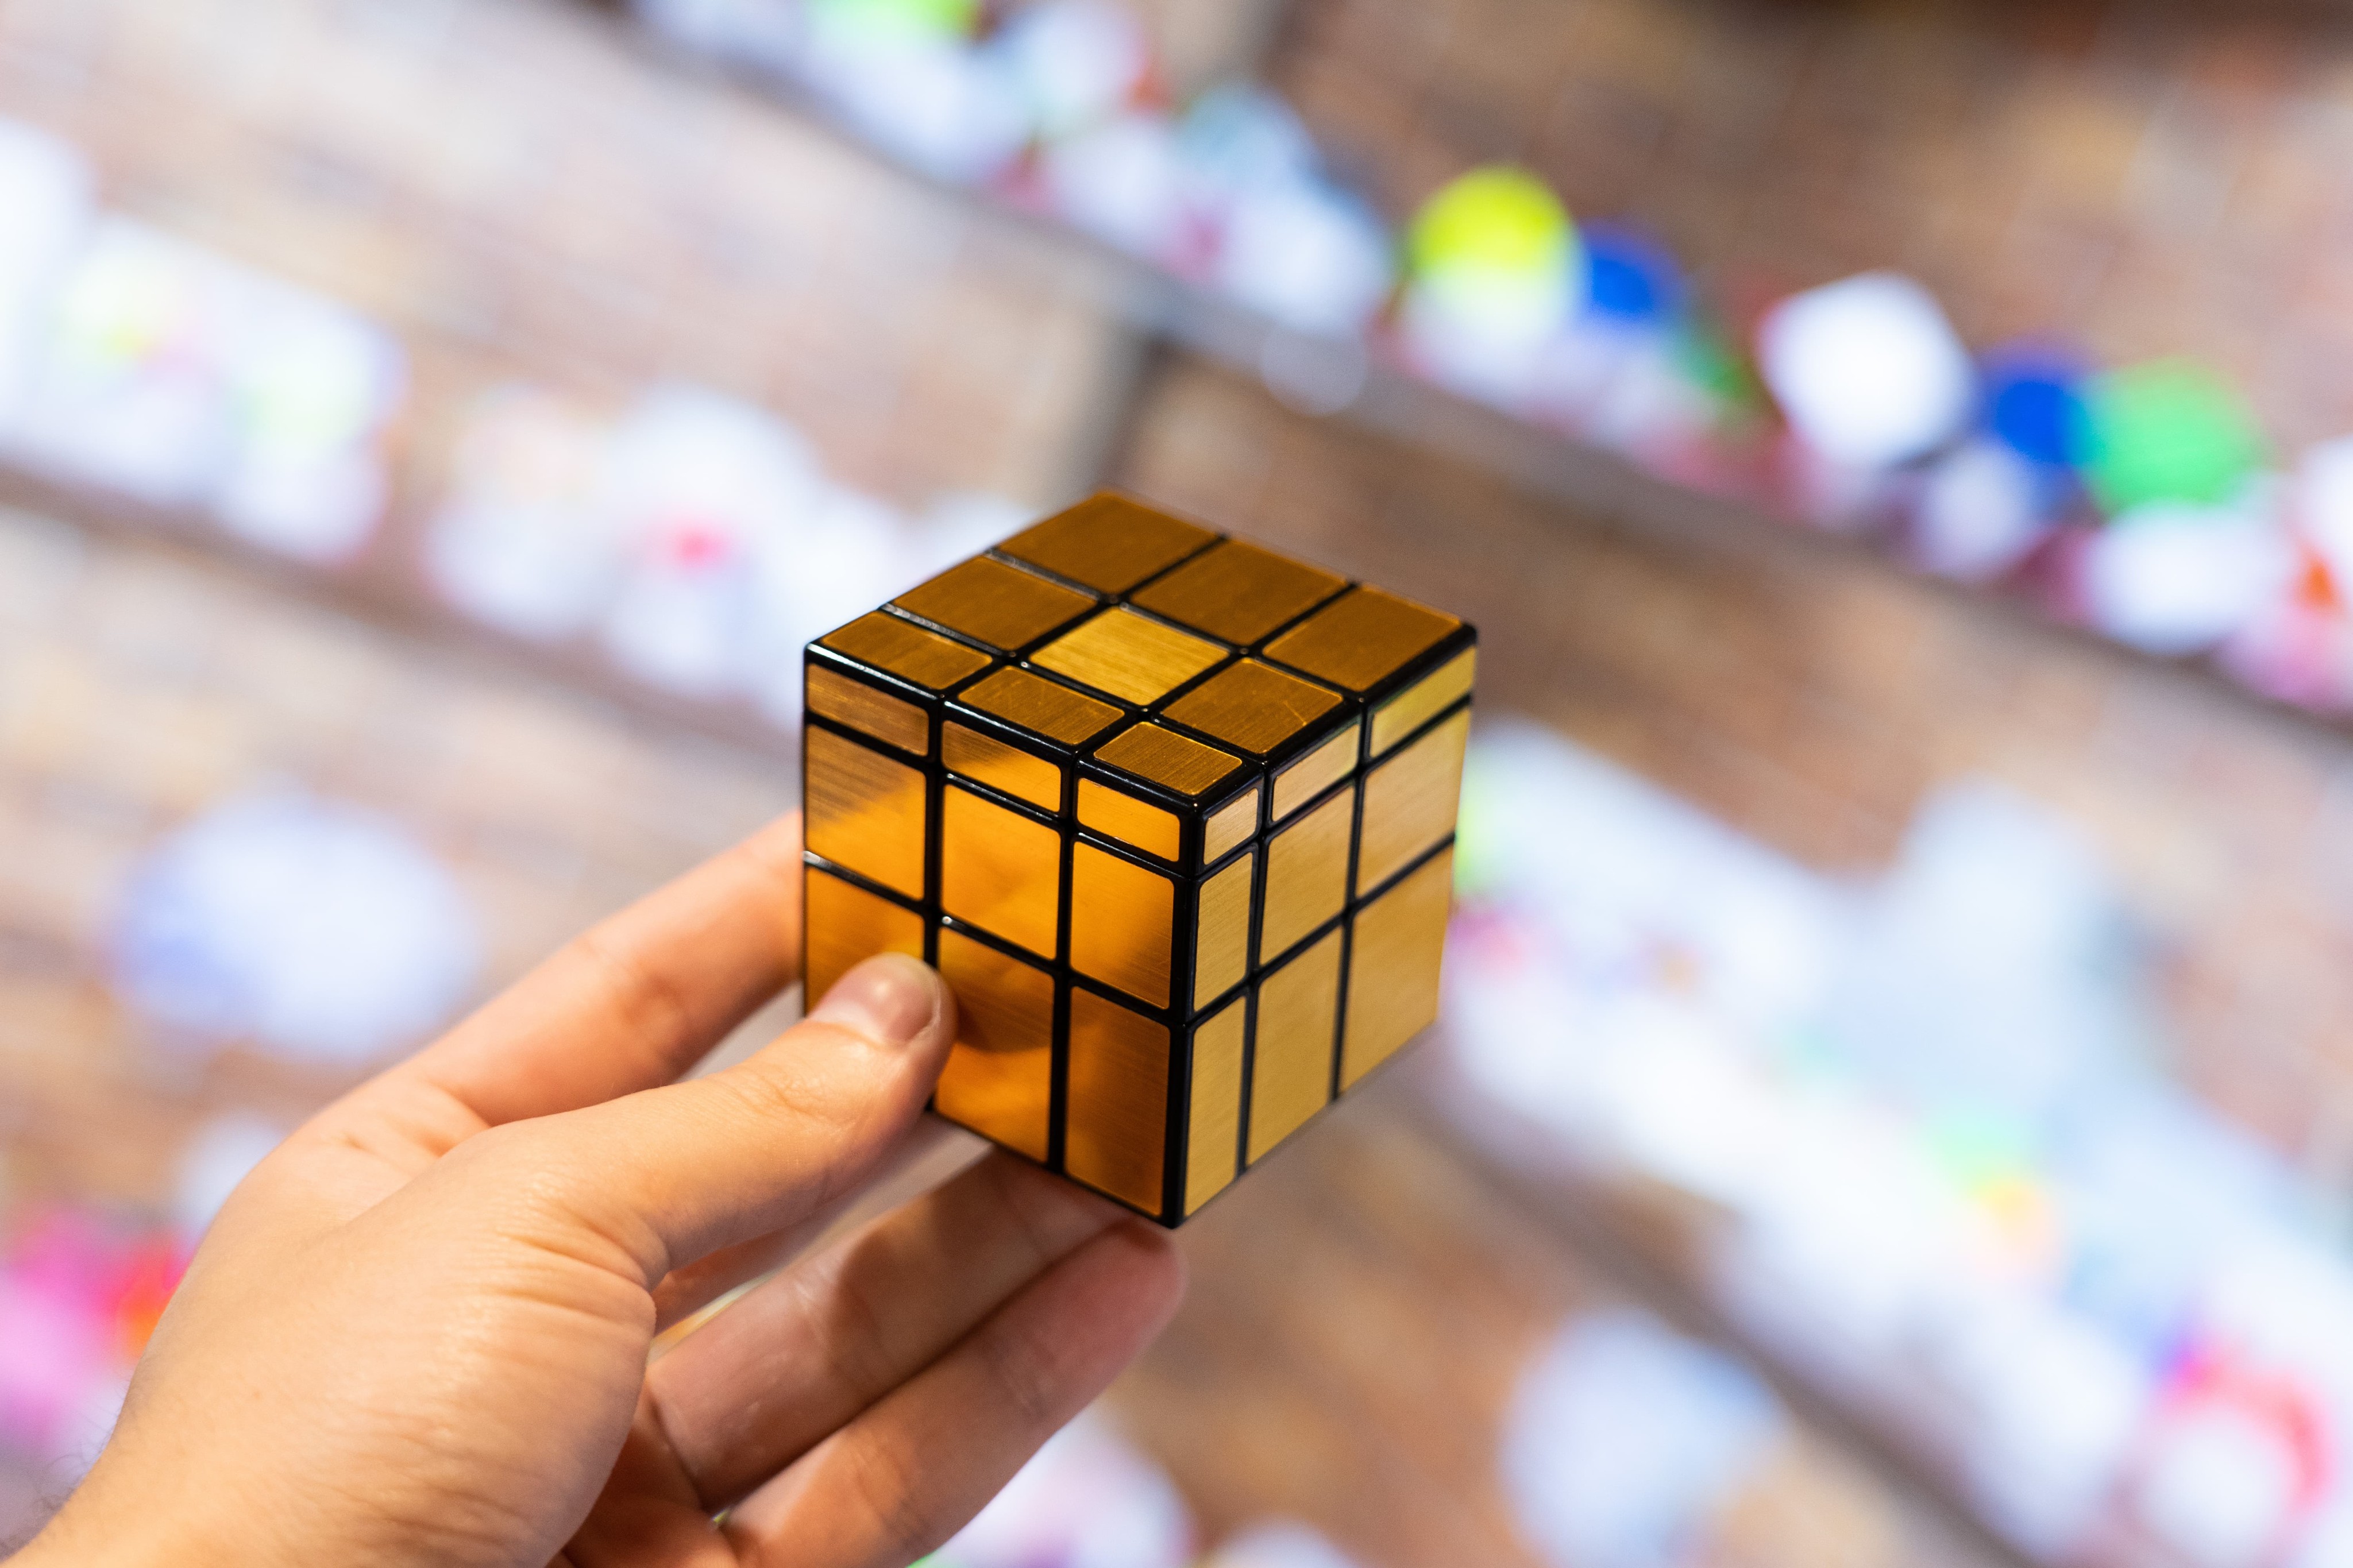 Логический зеркальный кубик Рубика головоломка «Золотой» 6 см. P168-11 / 3х3х3